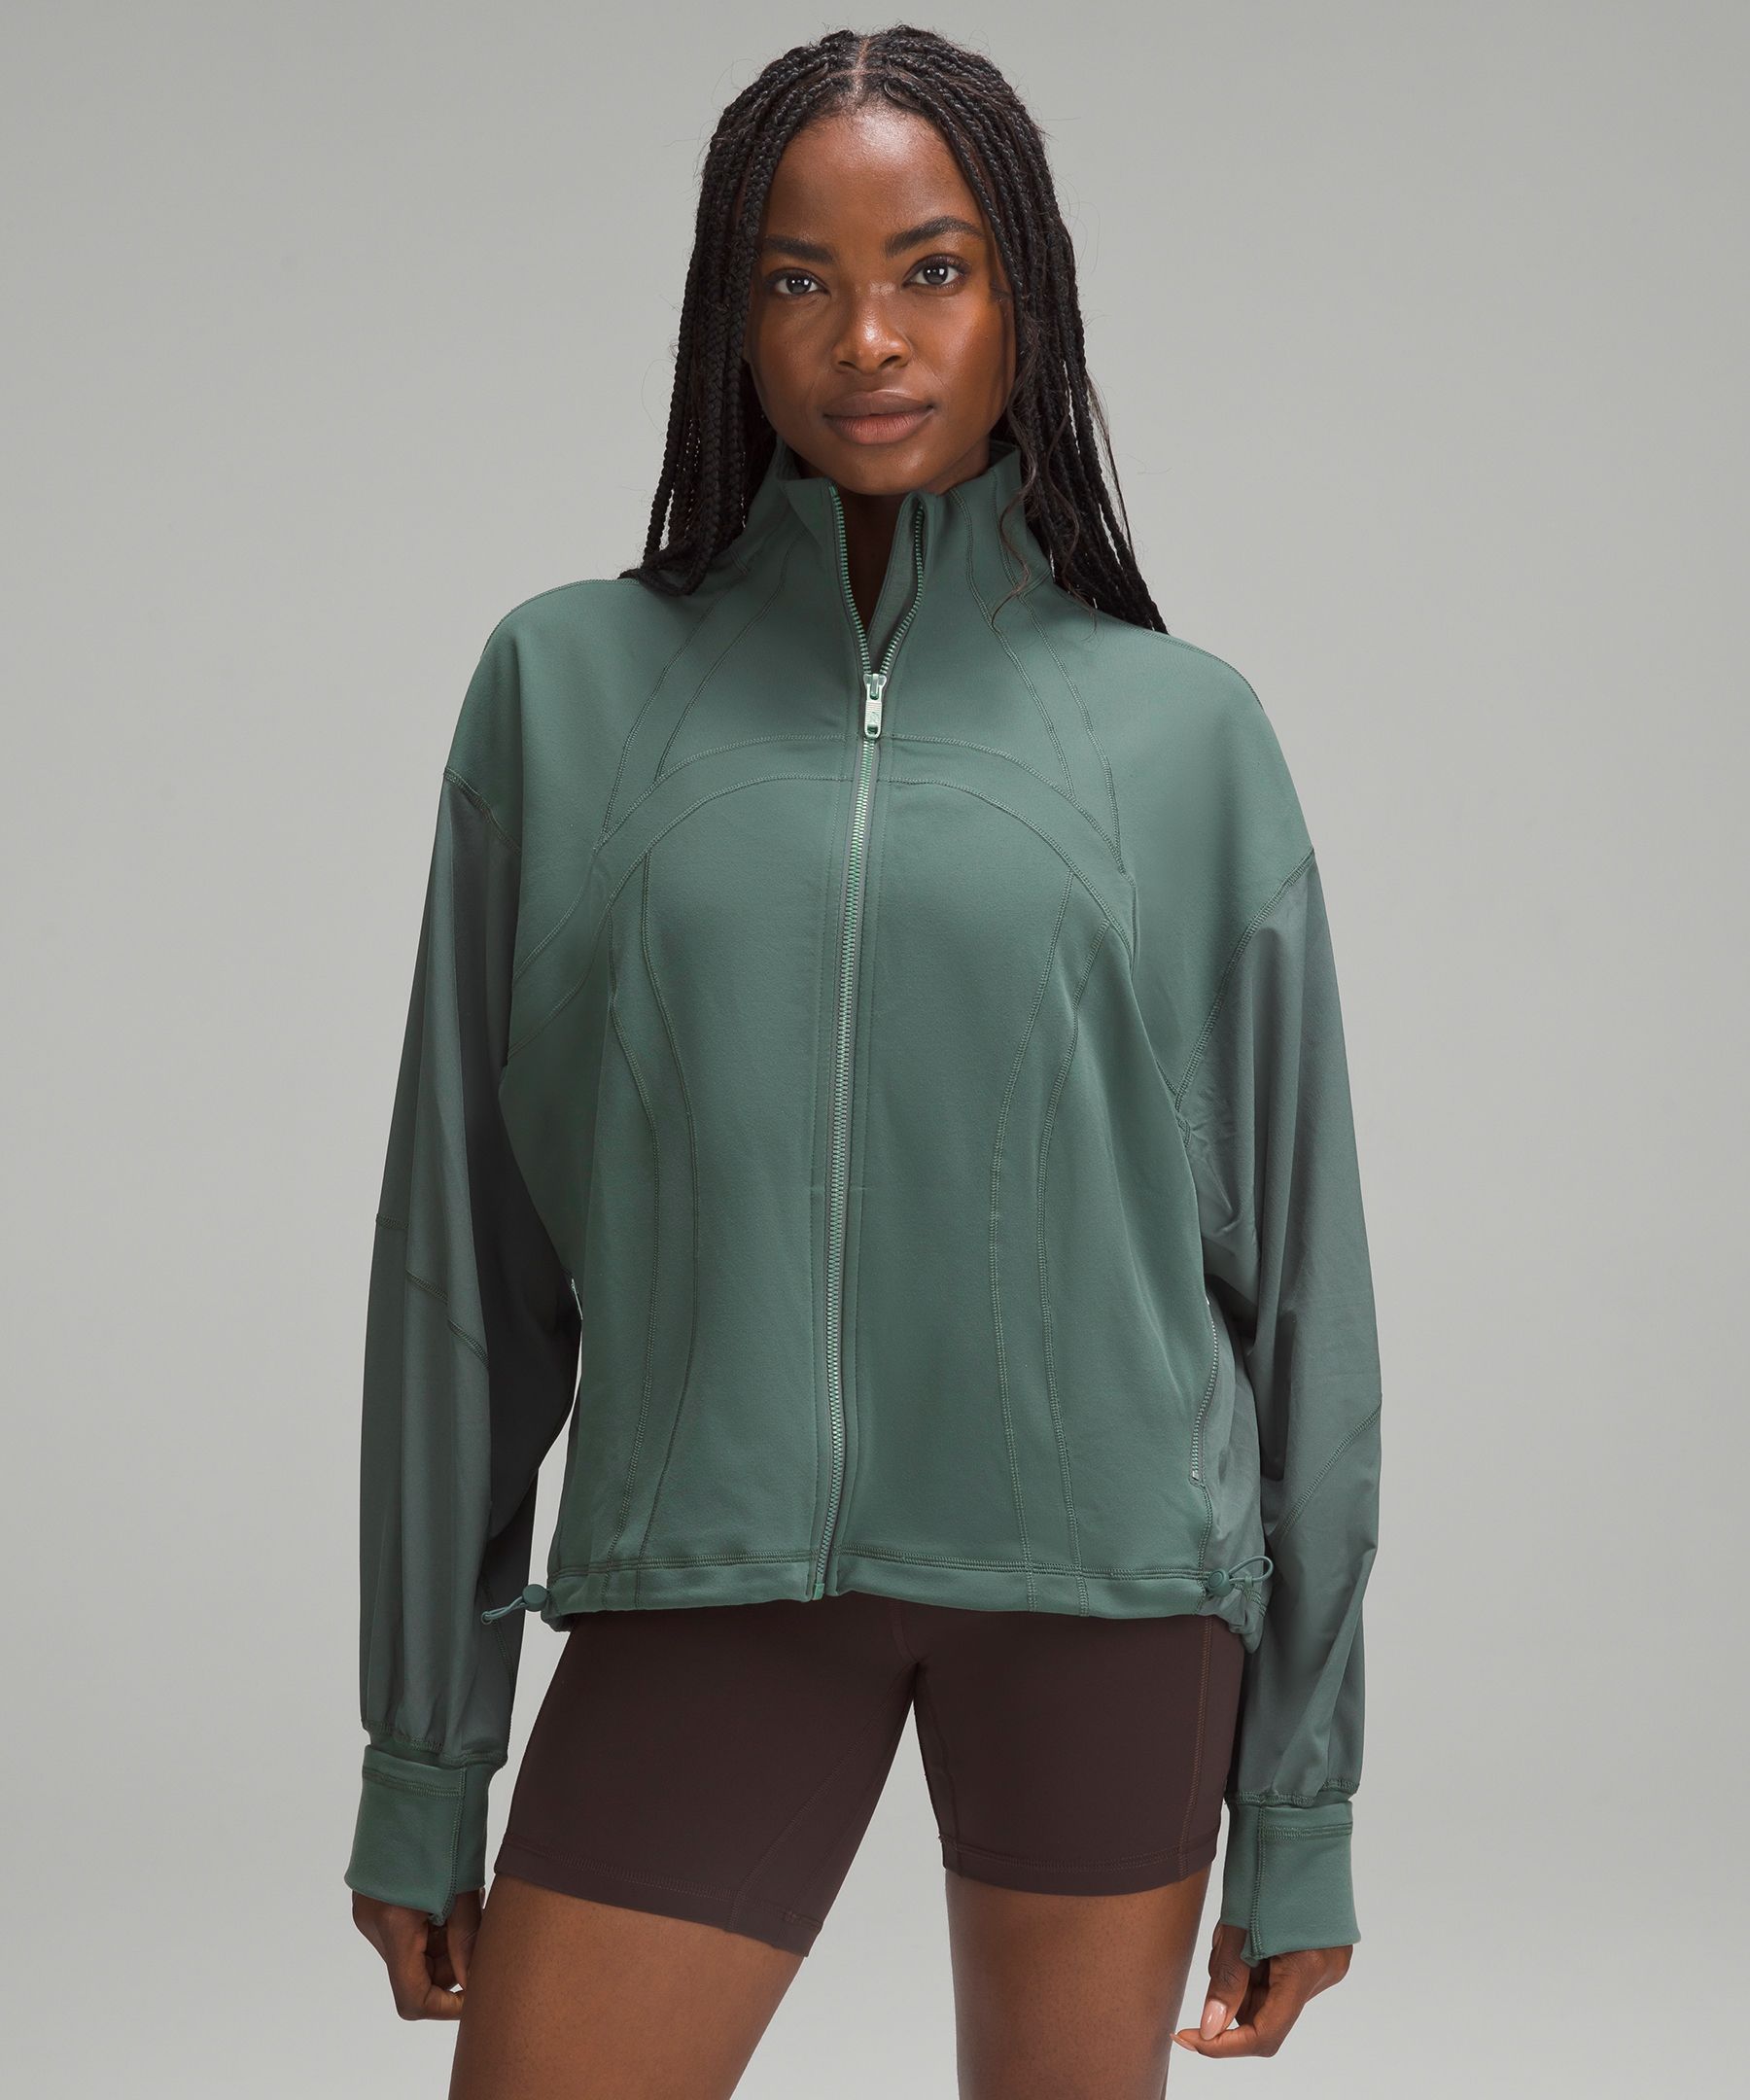 Define Relaxed-Fit Jacket *Luon, Women's Hoodies & Sweatshirts